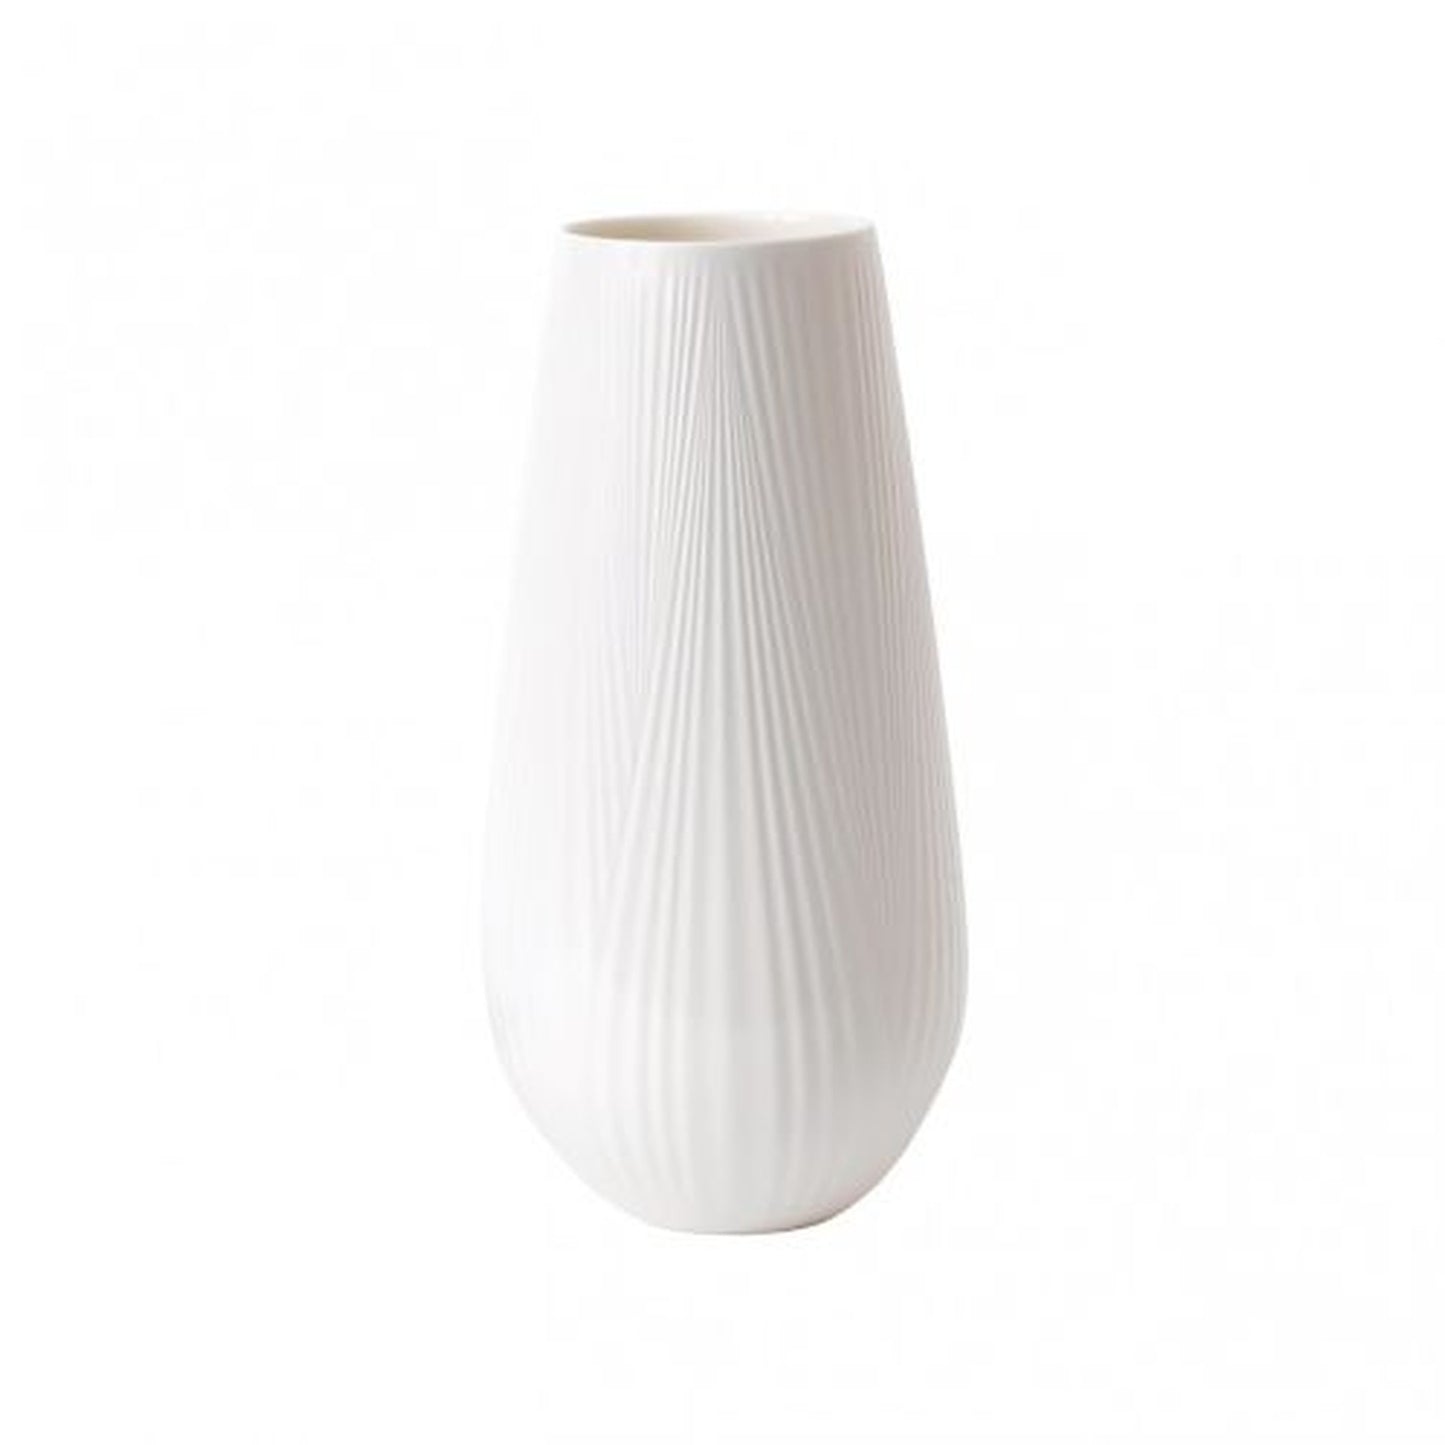 Wedgwood White Folia Vase Tall 11.8"